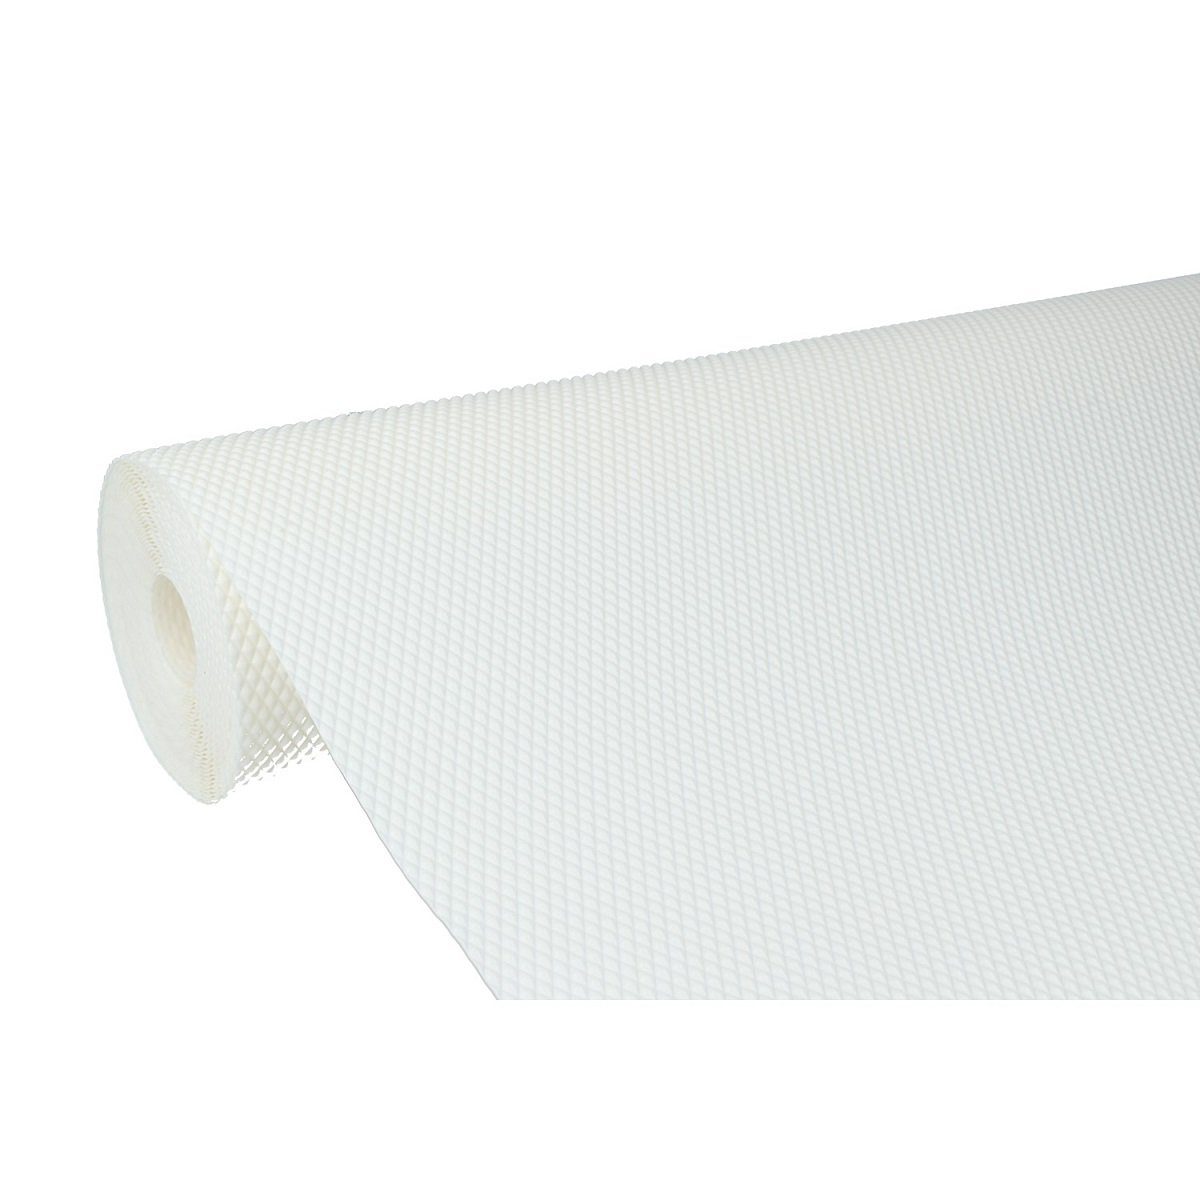 MS Beschläge Türbeschlag Antirutschmatte Schubladenmatte 48x500cm Unterlage Weiß